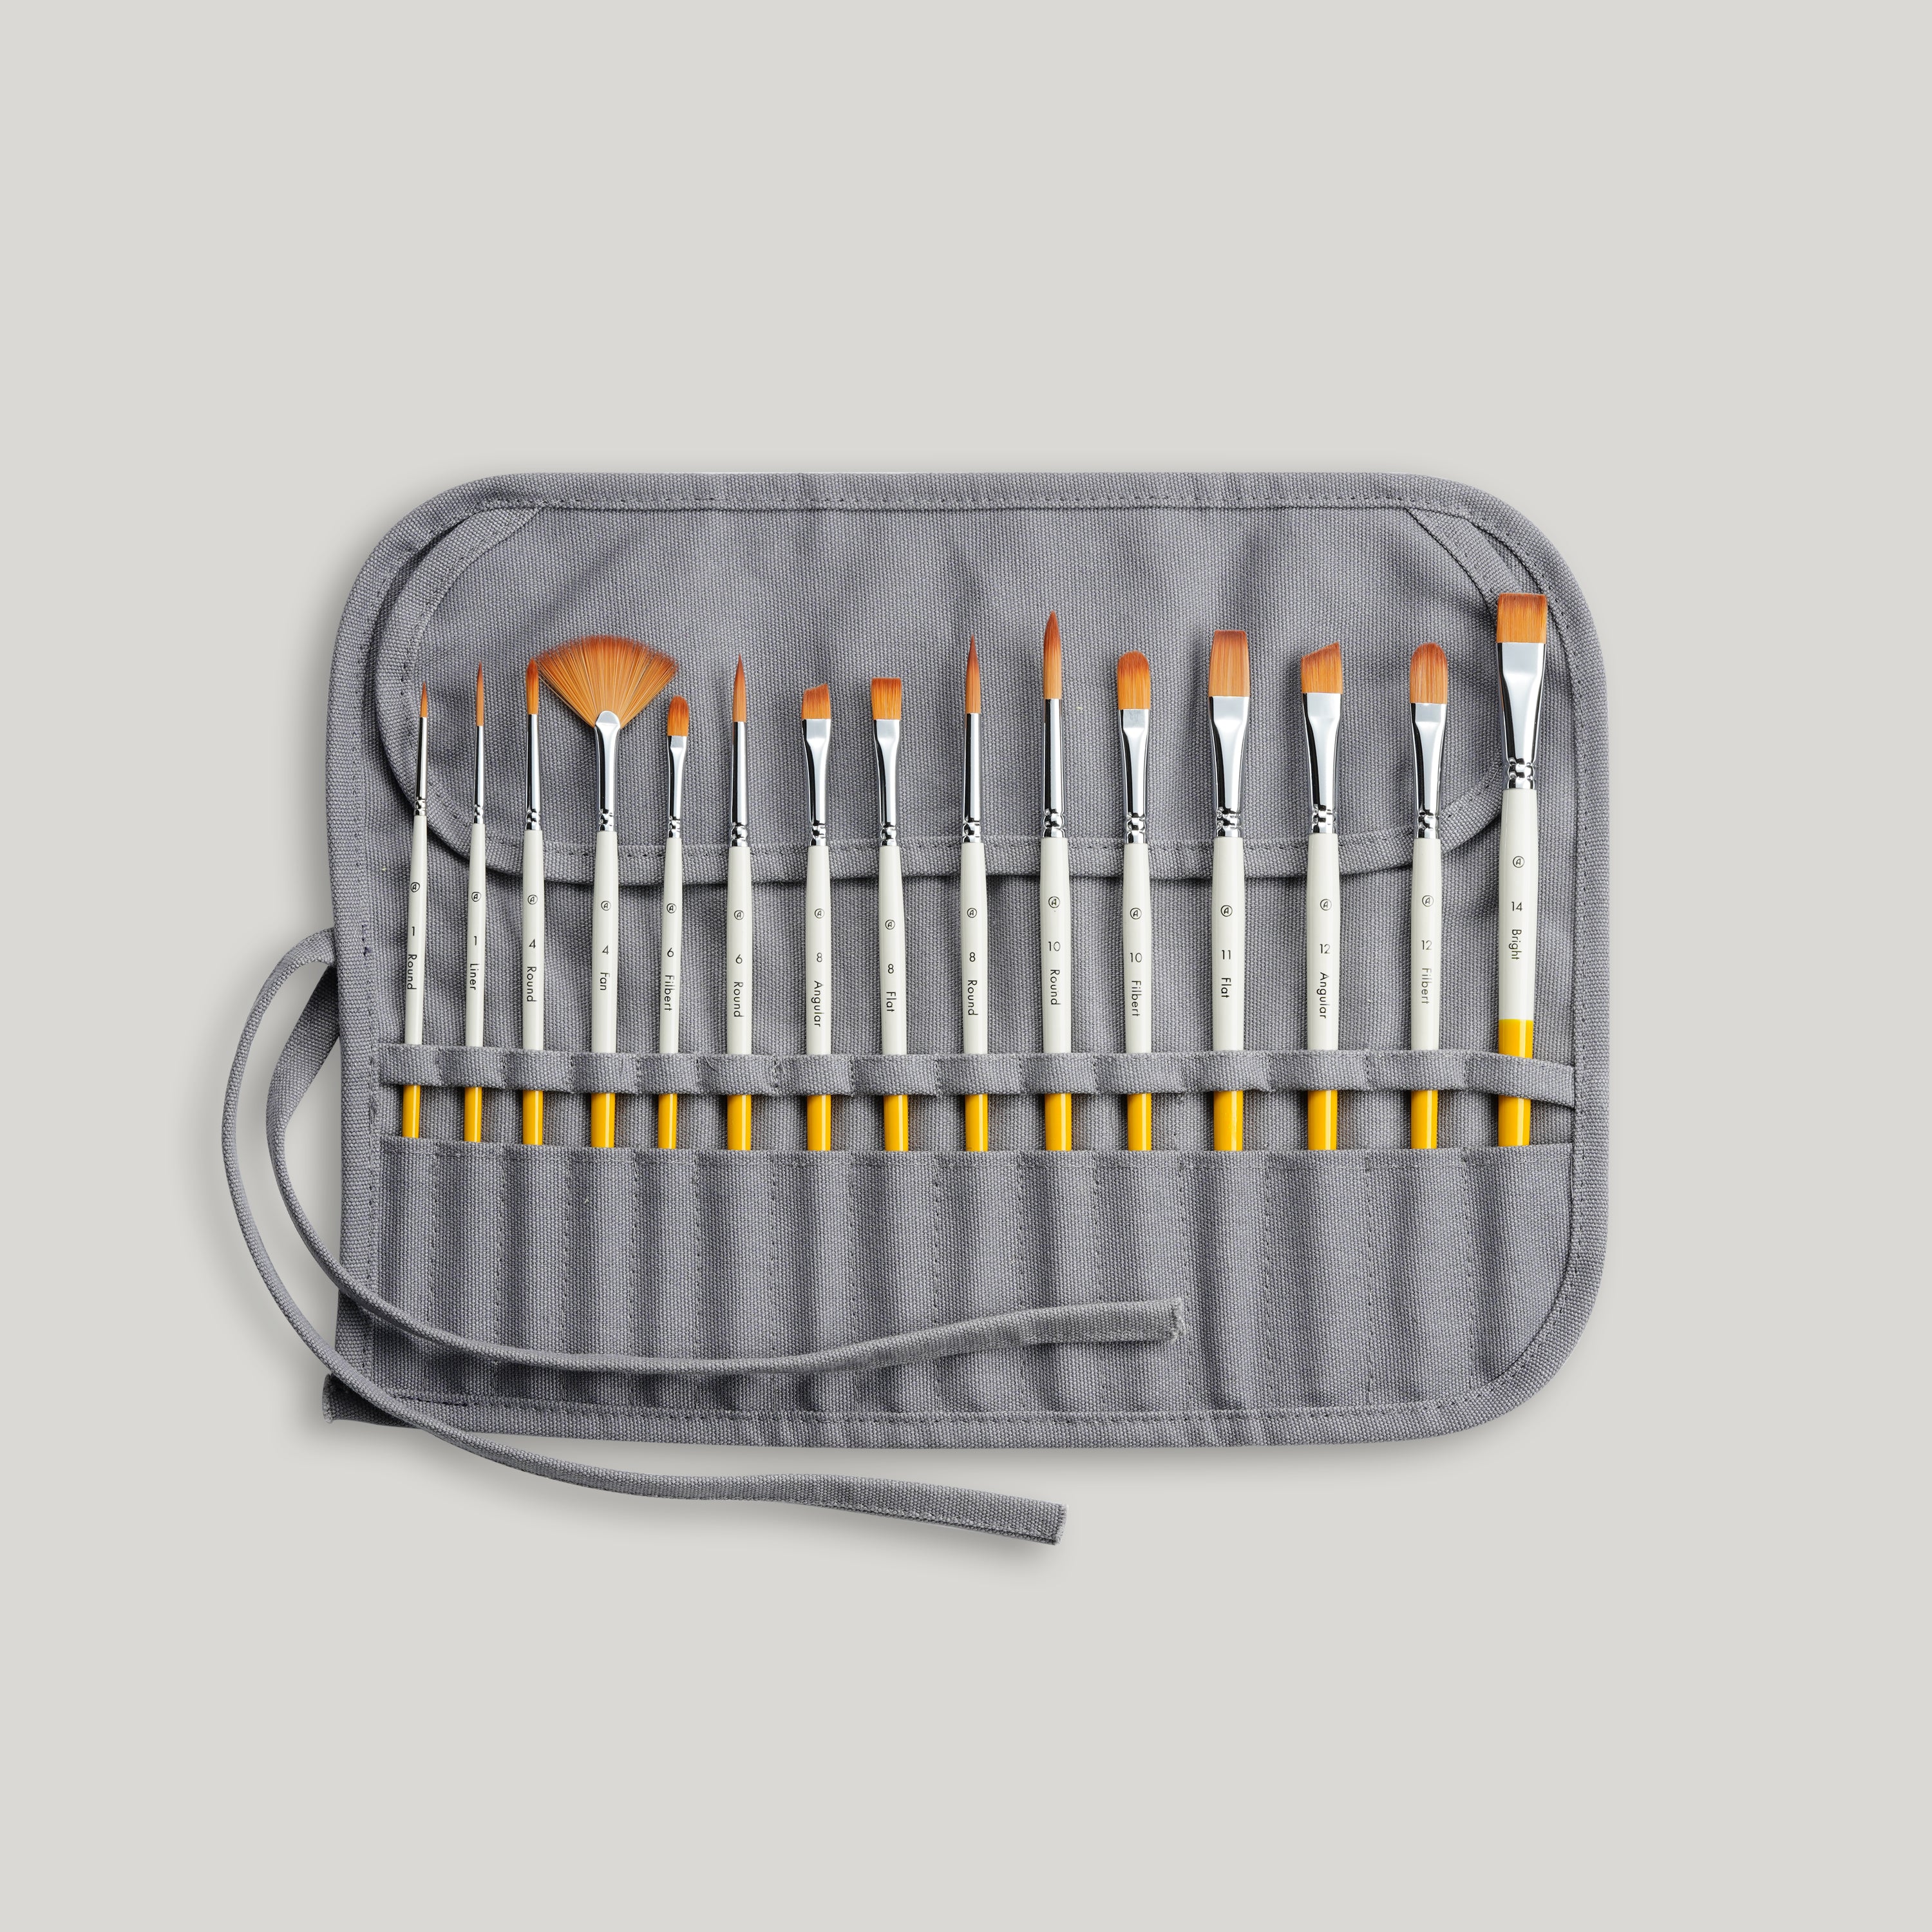 Acrylic Paint Brushes Set 15 Pieces, Nylon Bristle Paintbrushes